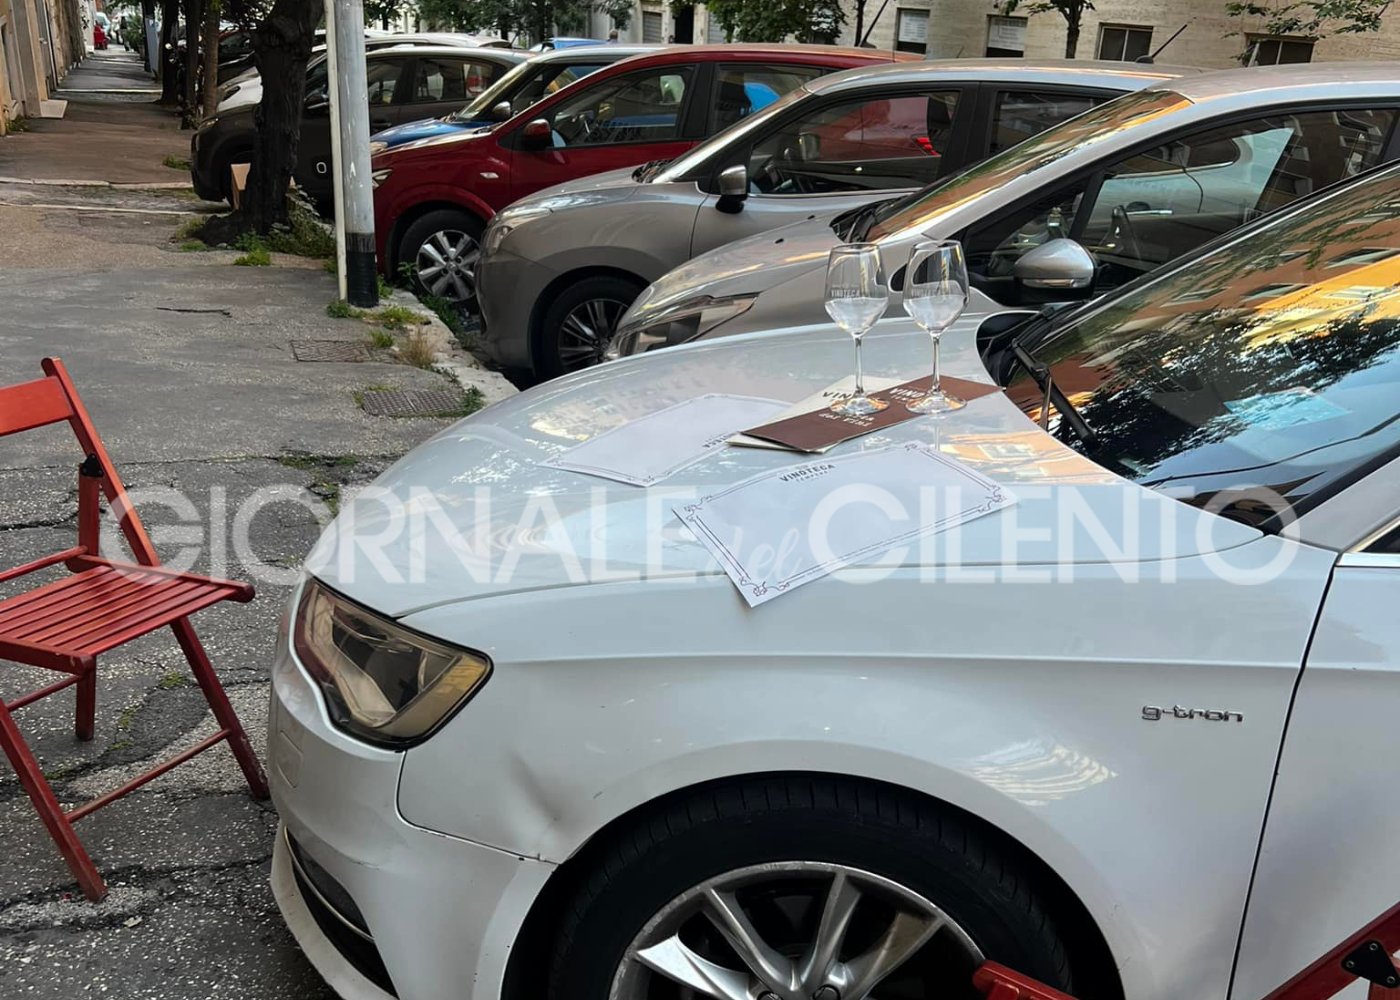 Apparecchia sulle auto in sosta selvaggia: la protesta a Roma di un ristoratore valdianese